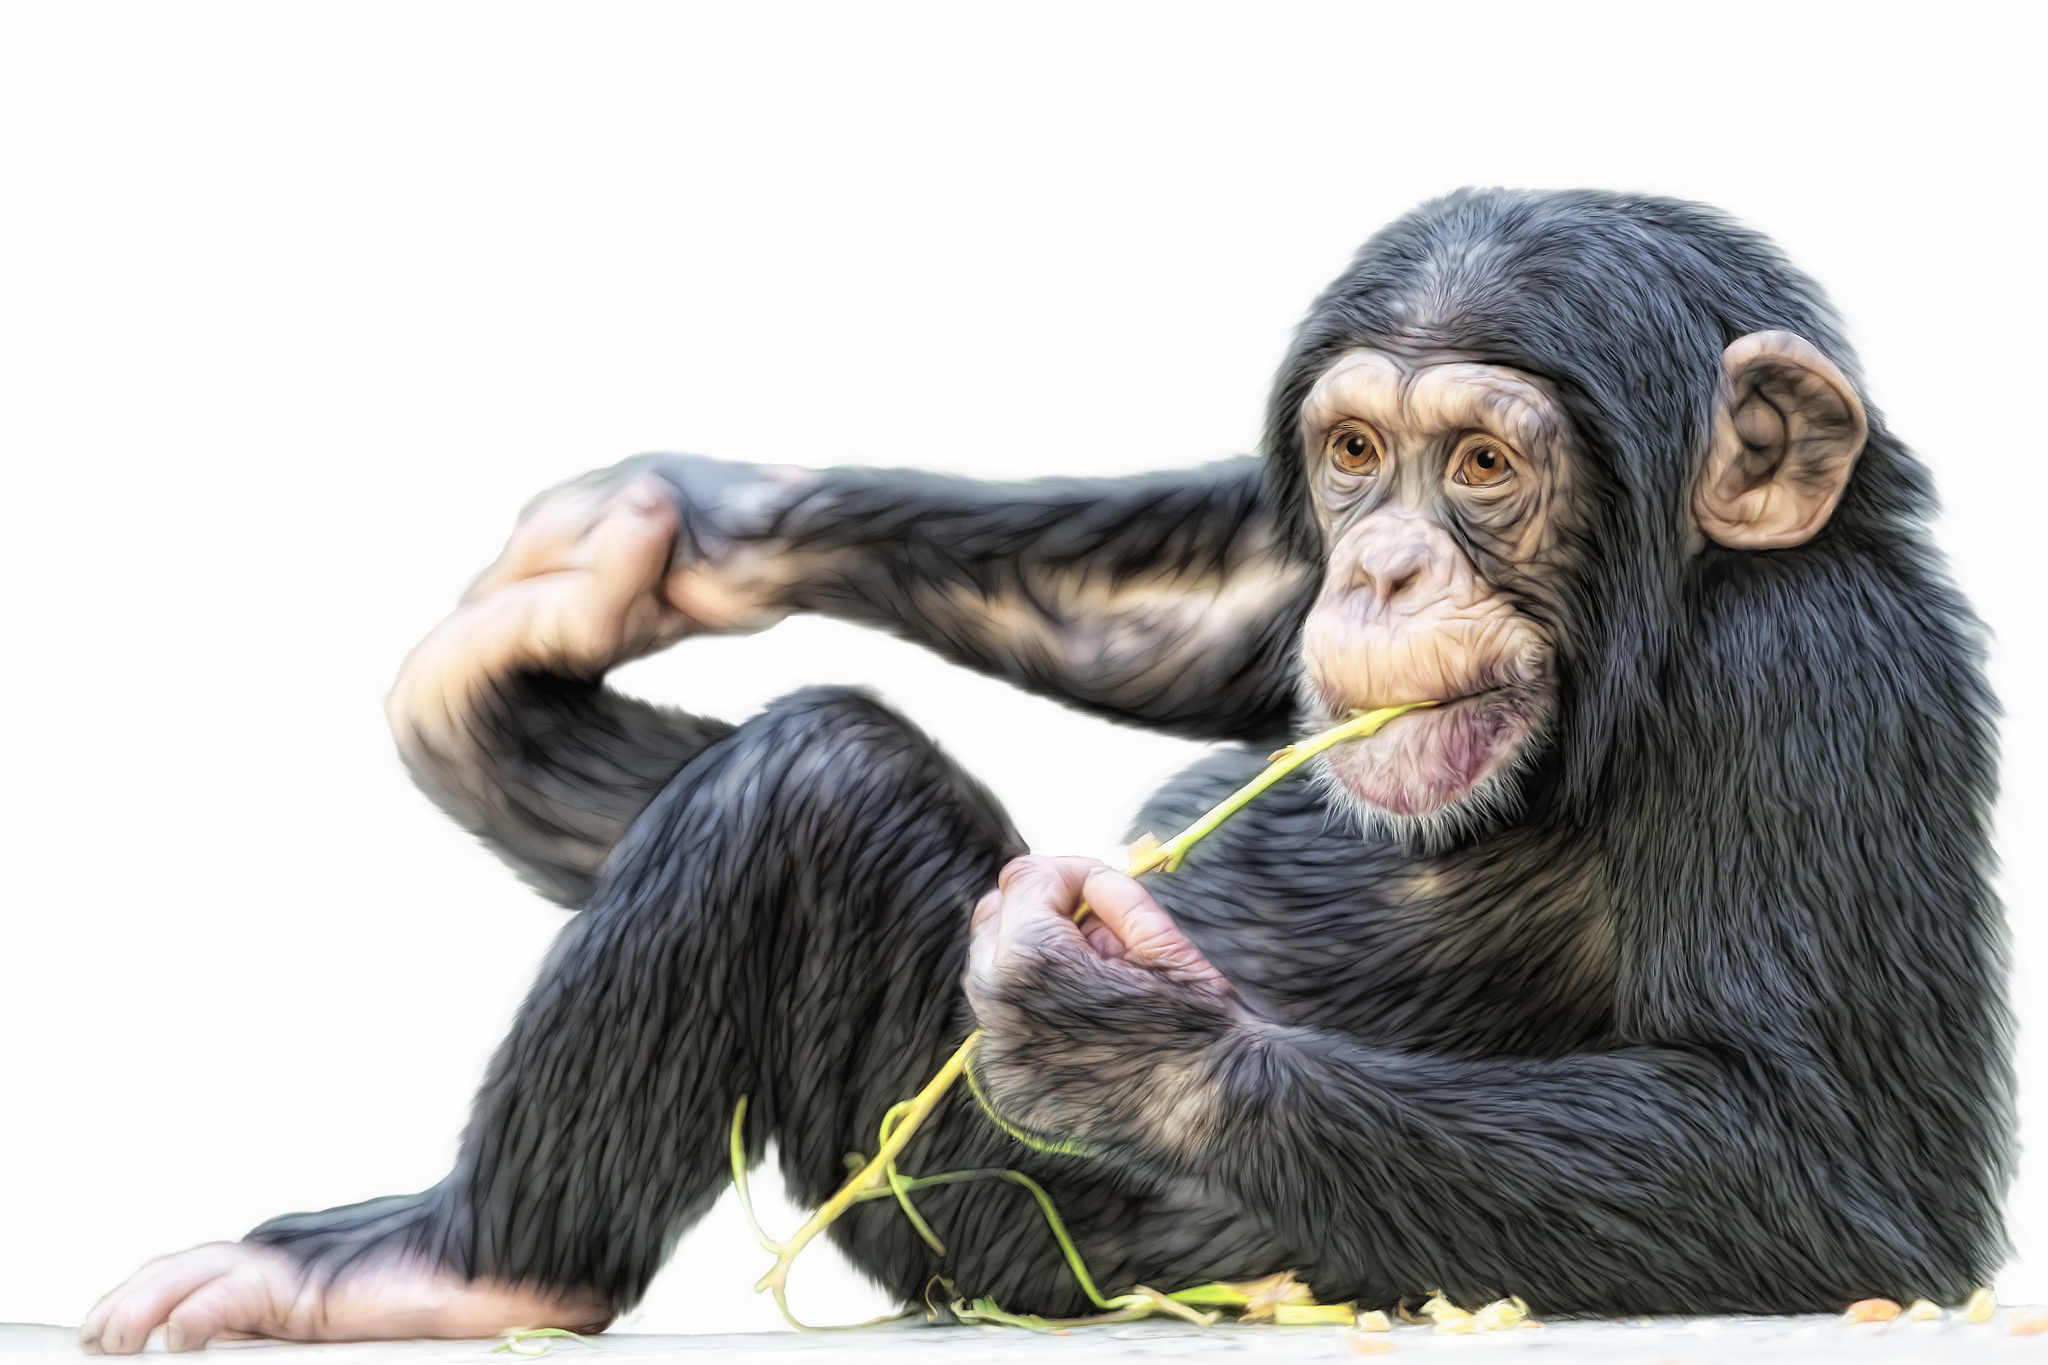 Monkey Chimpanzee Wallpaper